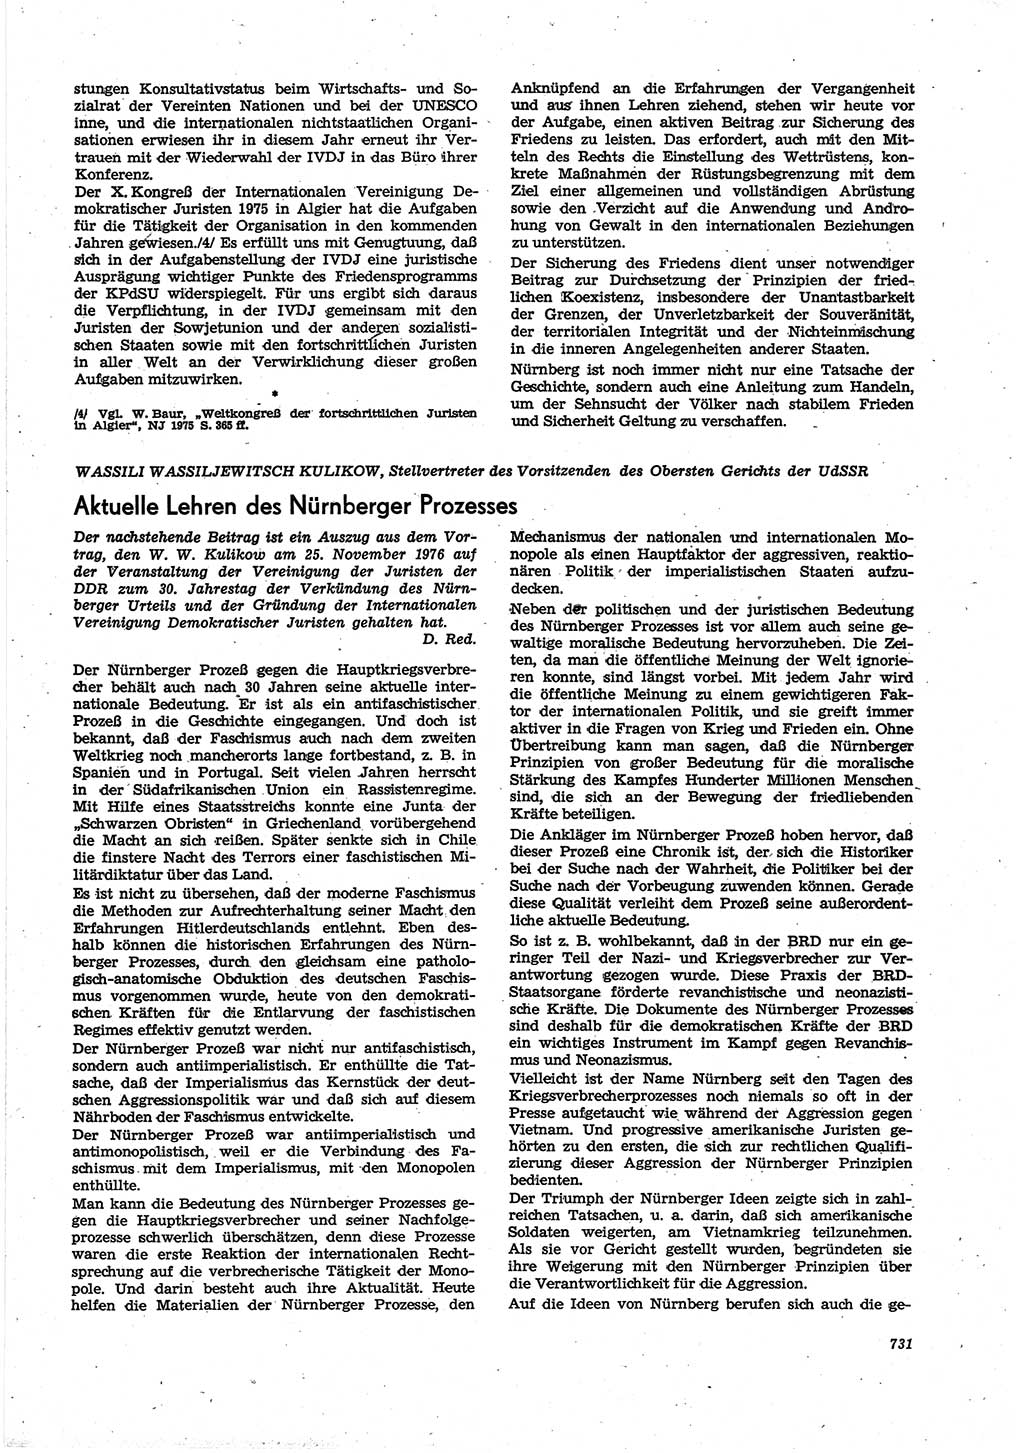 Neue Justiz (NJ), Zeitschrift für Recht und Rechtswissenschaft [Deutsche Demokratische Republik (DDR)], 30. Jahrgang 1976, Seite 731 (NJ DDR 1976, S. 731)